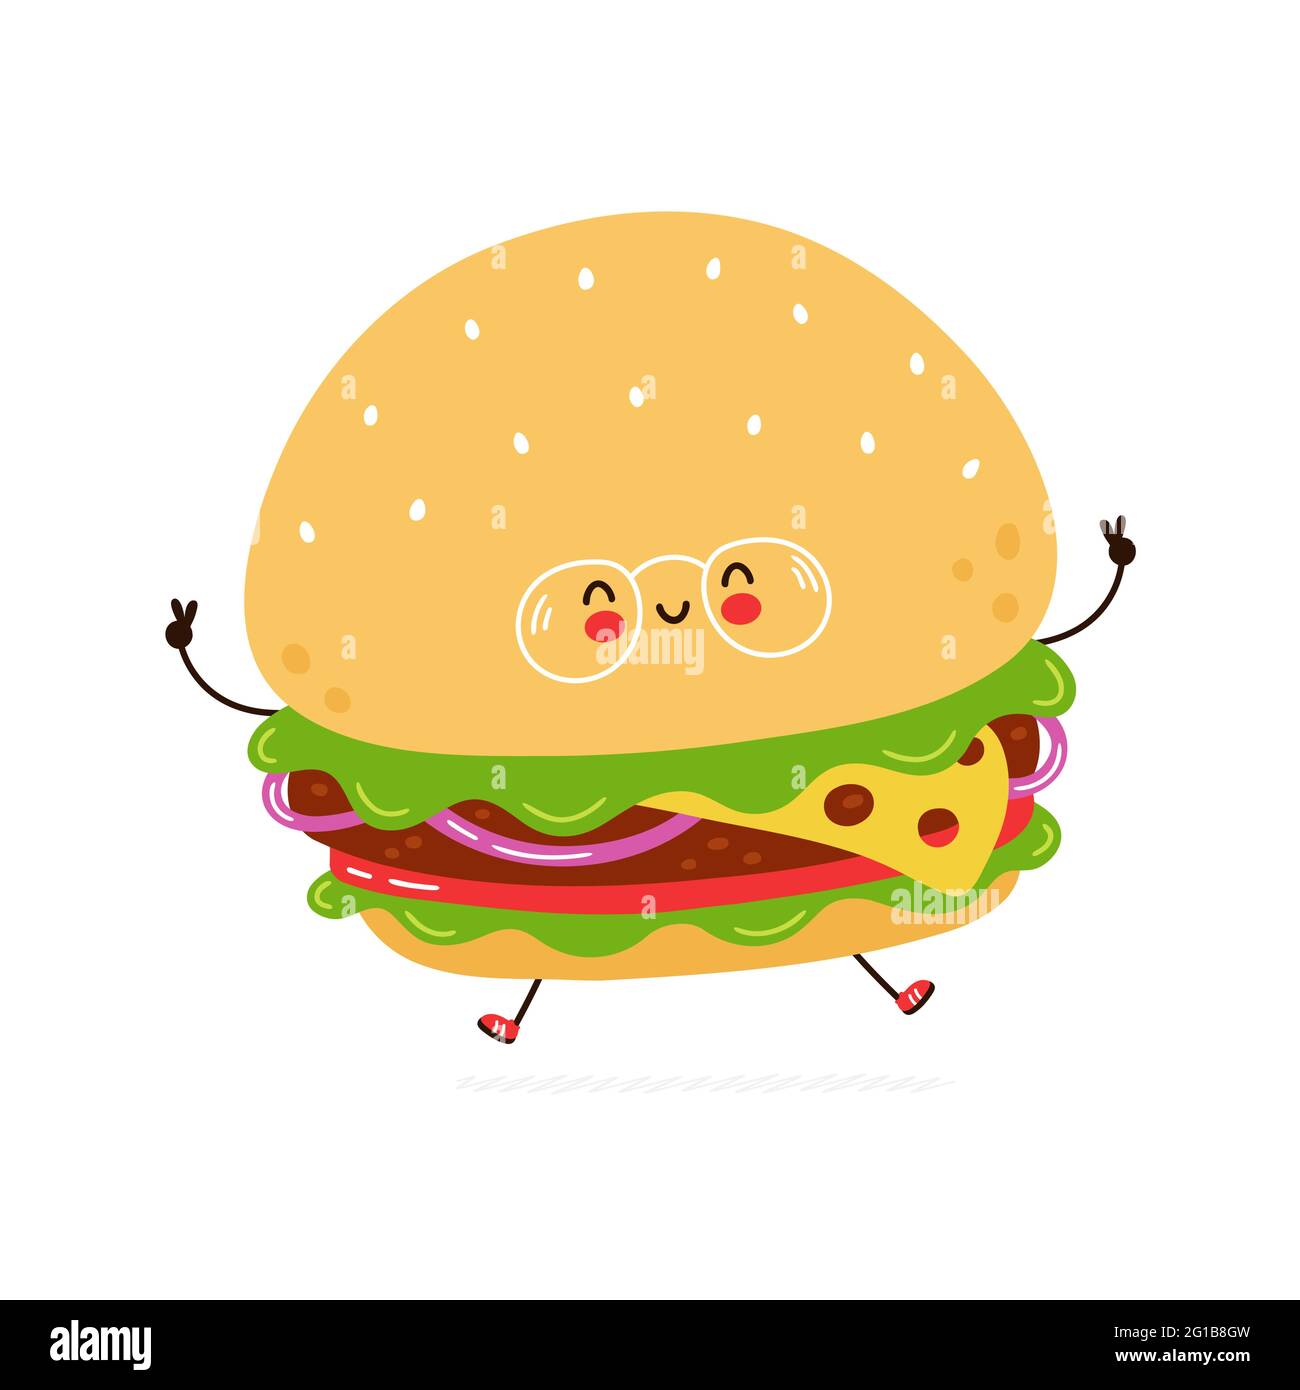 Simpatico hamburger divertente in caratteri bicchieri. Icona raffigurante il carattere kawaii del fumetto disegnato a mano del vettore. Isolato su sfondo bianco. Concetto di carattere Burger Illustrazione Vettoriale